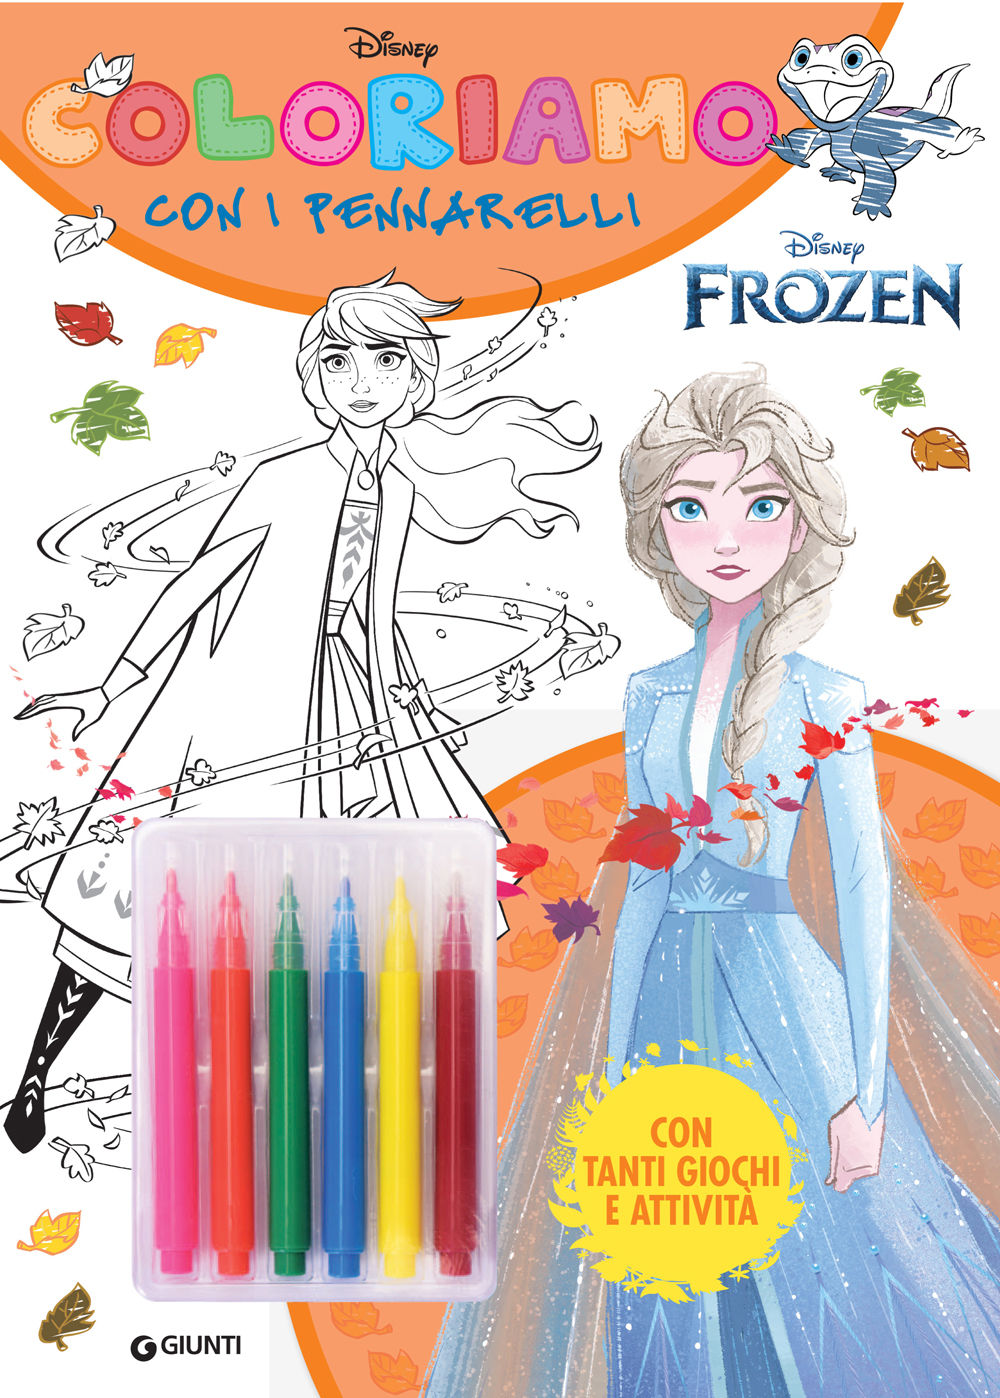 Coloriamo con i pennarelli Disney Frozen